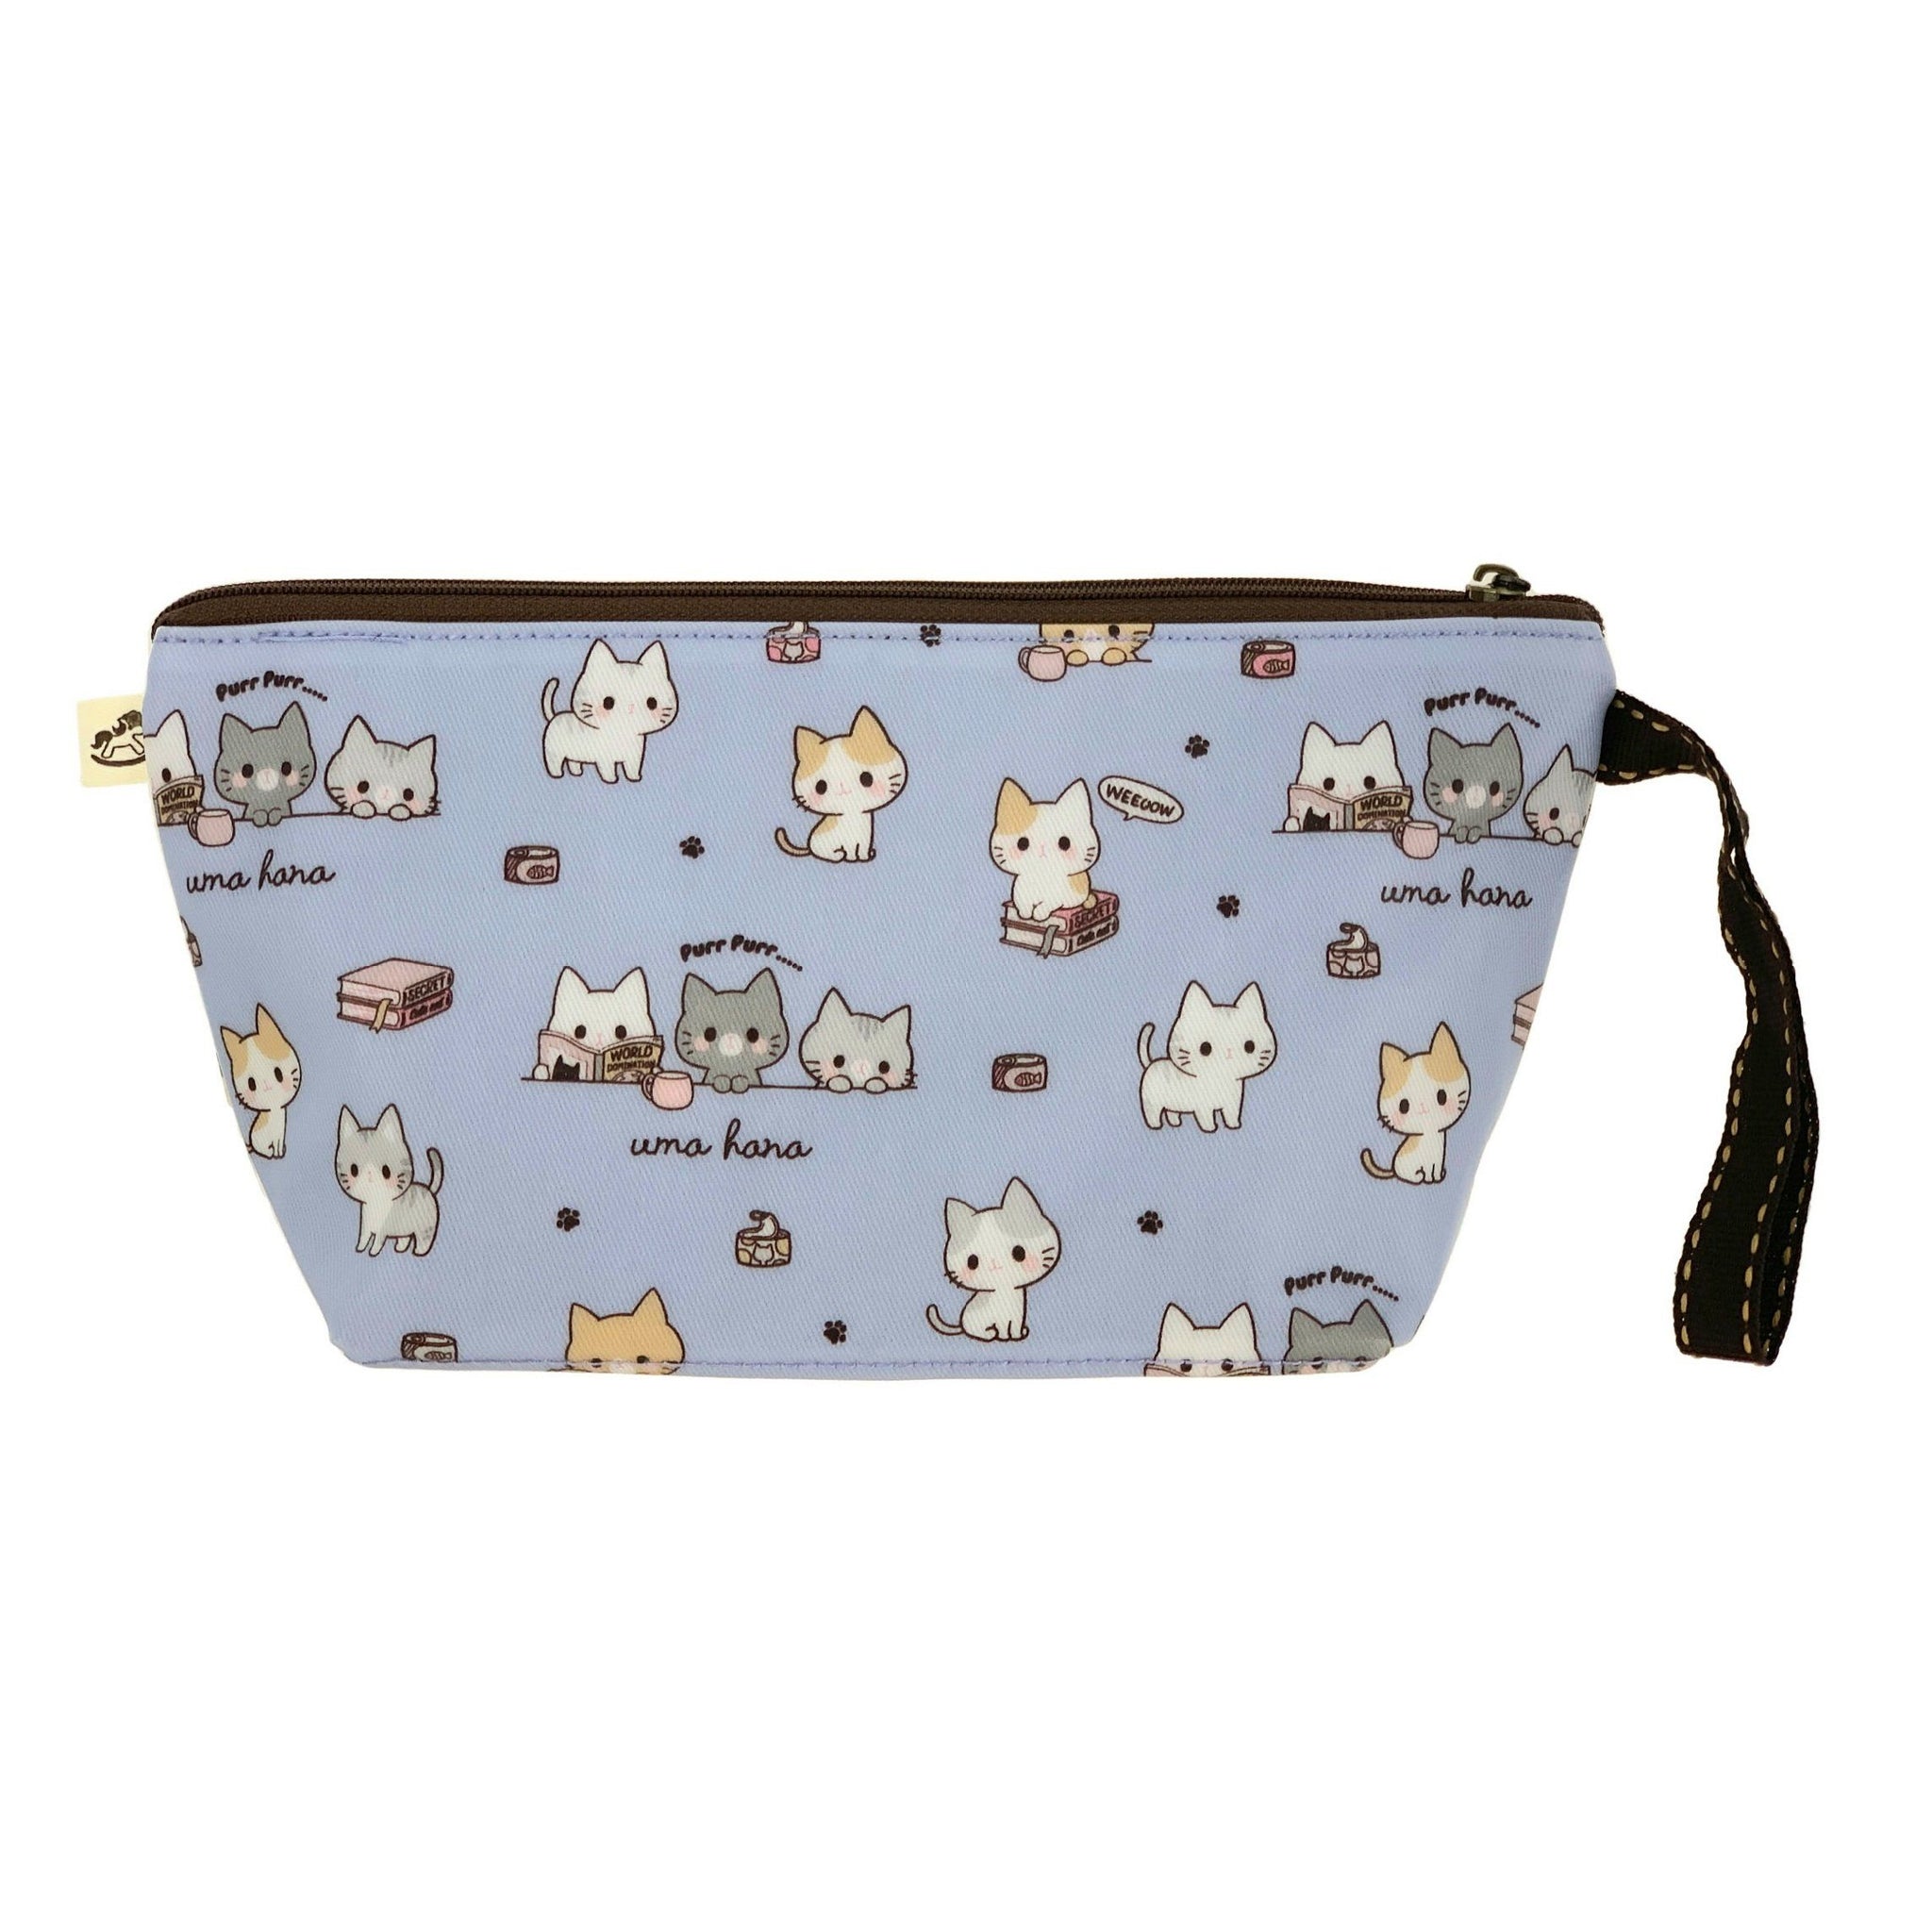 Periwinkle Blue Meow Cat Dumpling Cosmetic Bag Cosmetic Bag Tworgis 